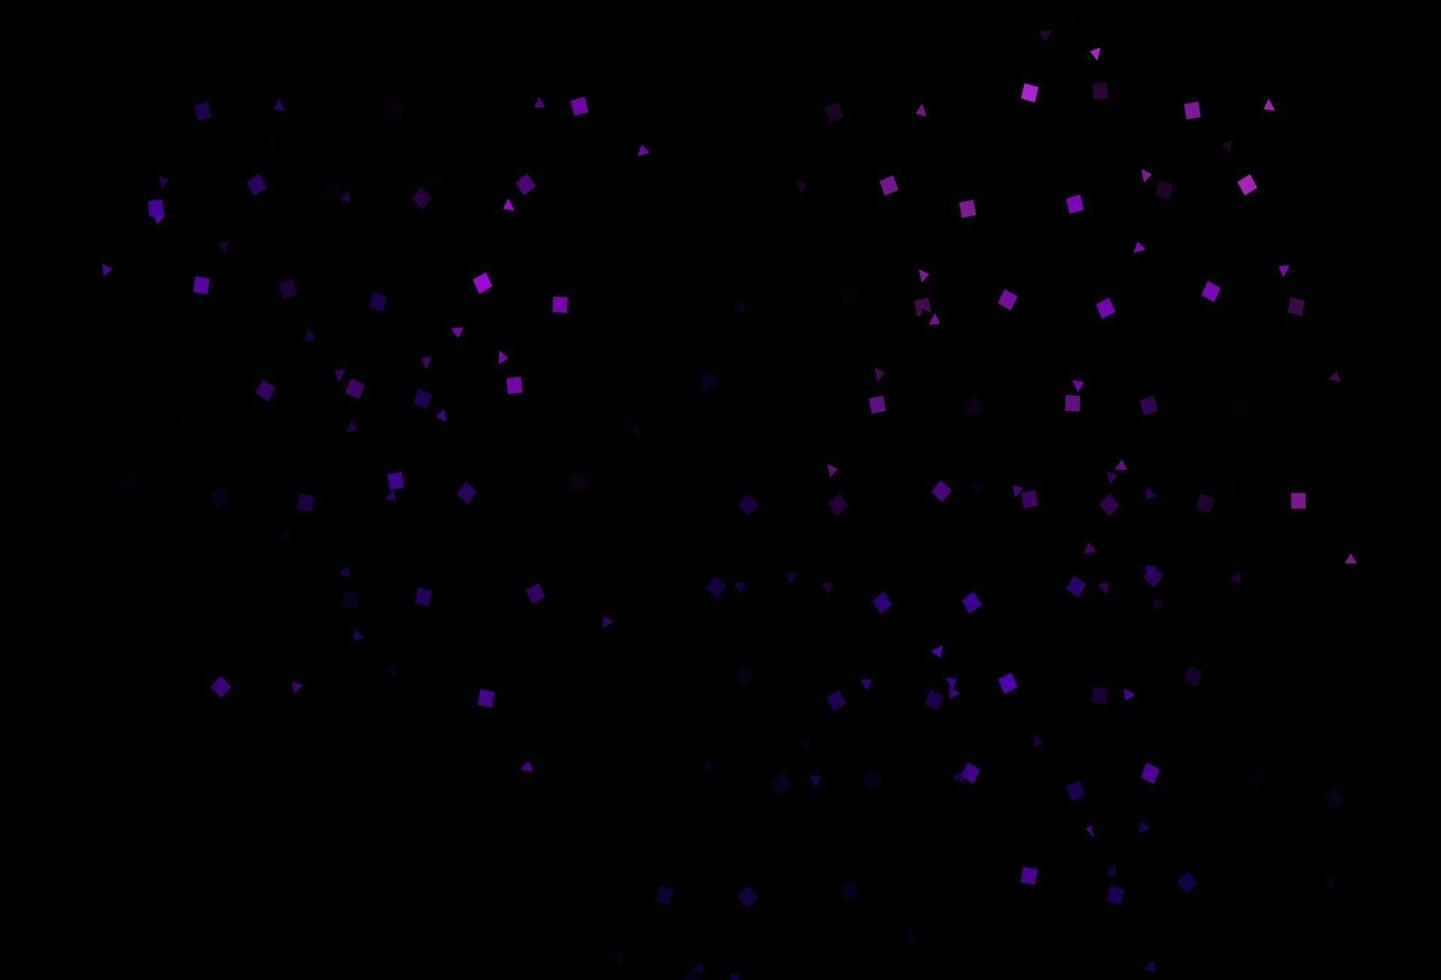 padrão de vetor roxo escuro em estilo poligonal com círculos.